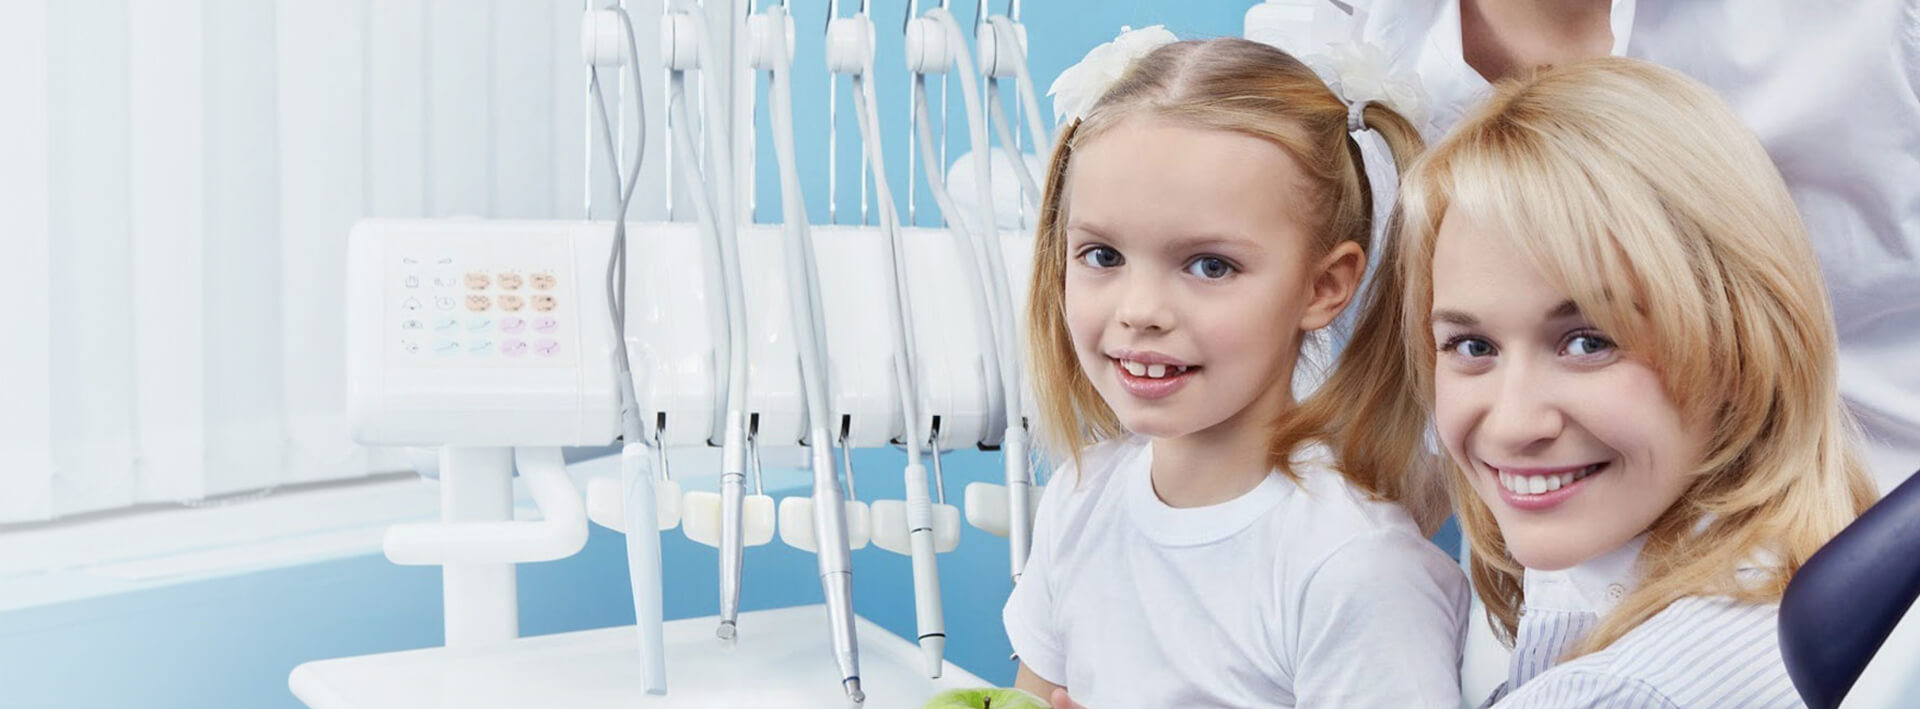 Стоматология детская томск бесплатно радуга в томске стоматология